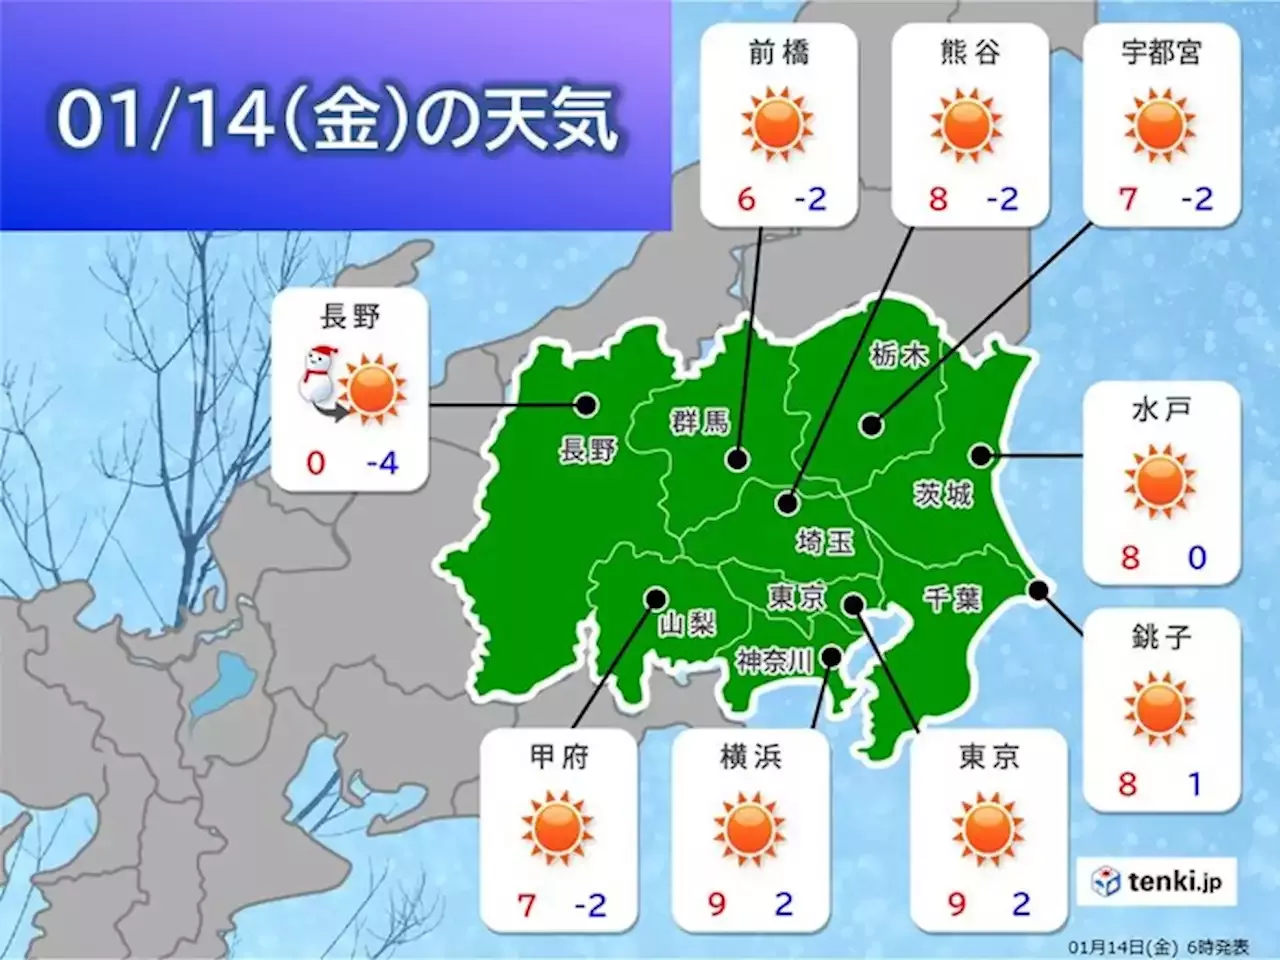 14日の関東甲信 山沿いは引き続き大雪警戒 晴れる平地も風が冷たい(気象予報士 戸田 よしか)